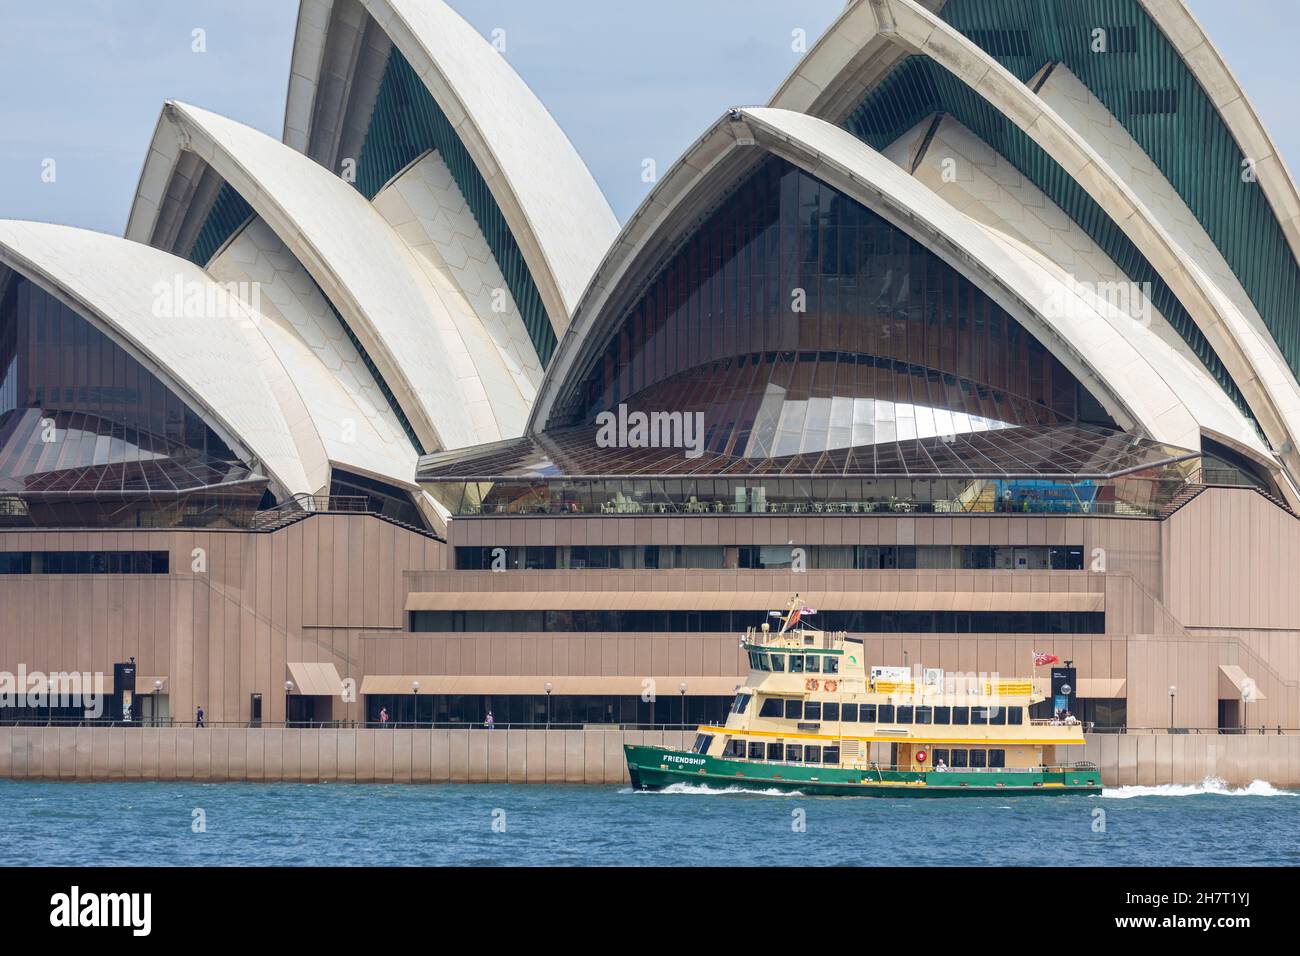 El ferry de Sídney recibe el nombre de Friendship Passes junto a la Ópera de Sídney en el puerto de Sídney, Nueva Gales del Sur, Australia Foto de stock